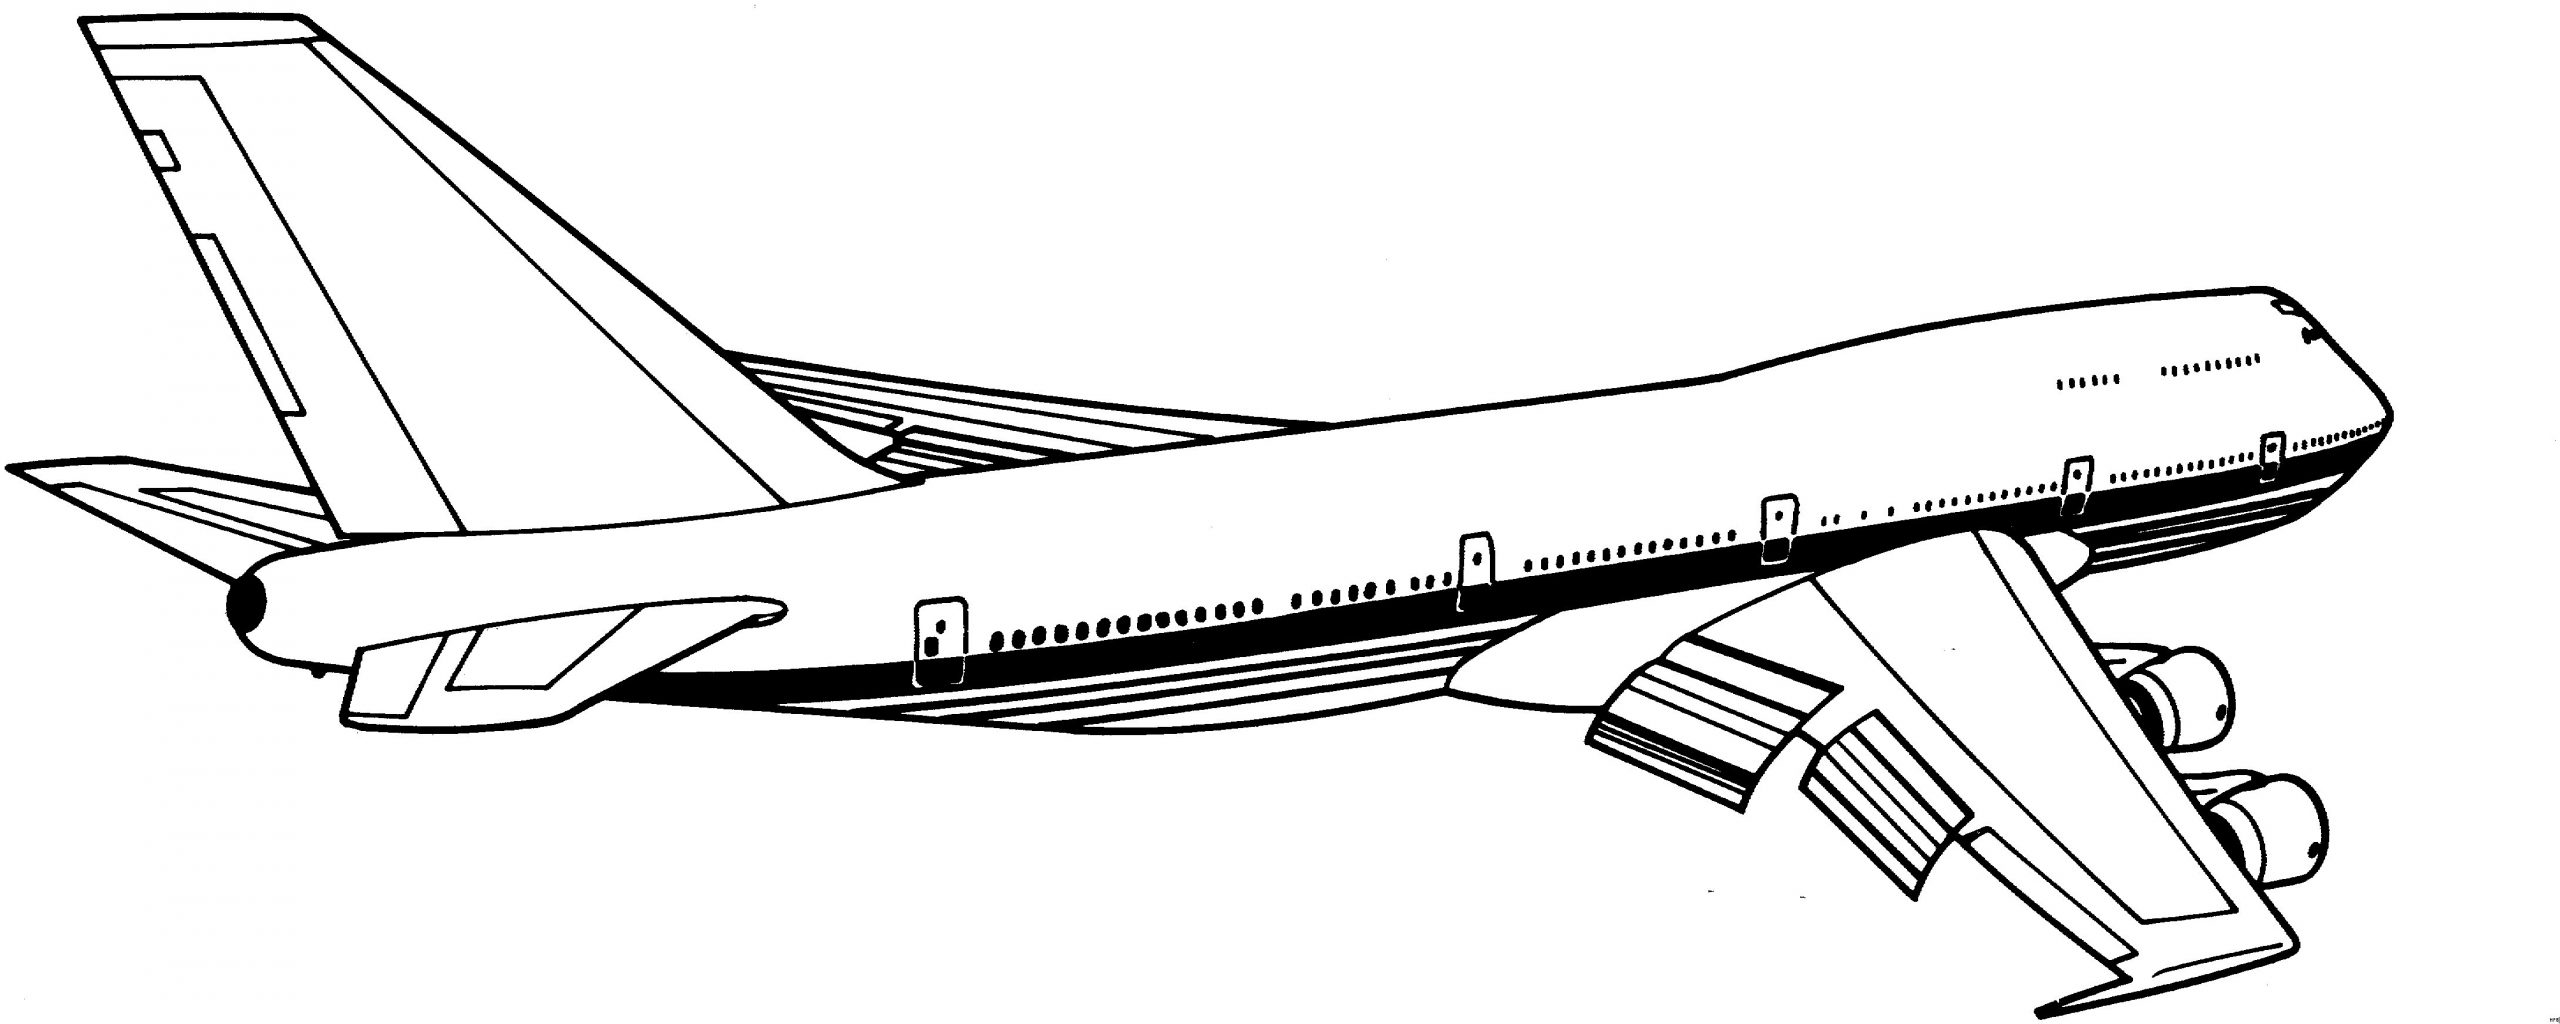 Malvorlagen Flugzeug Für Kinder Malvorlagen Flugzeug ganzes Flugzeug Ausmalbild